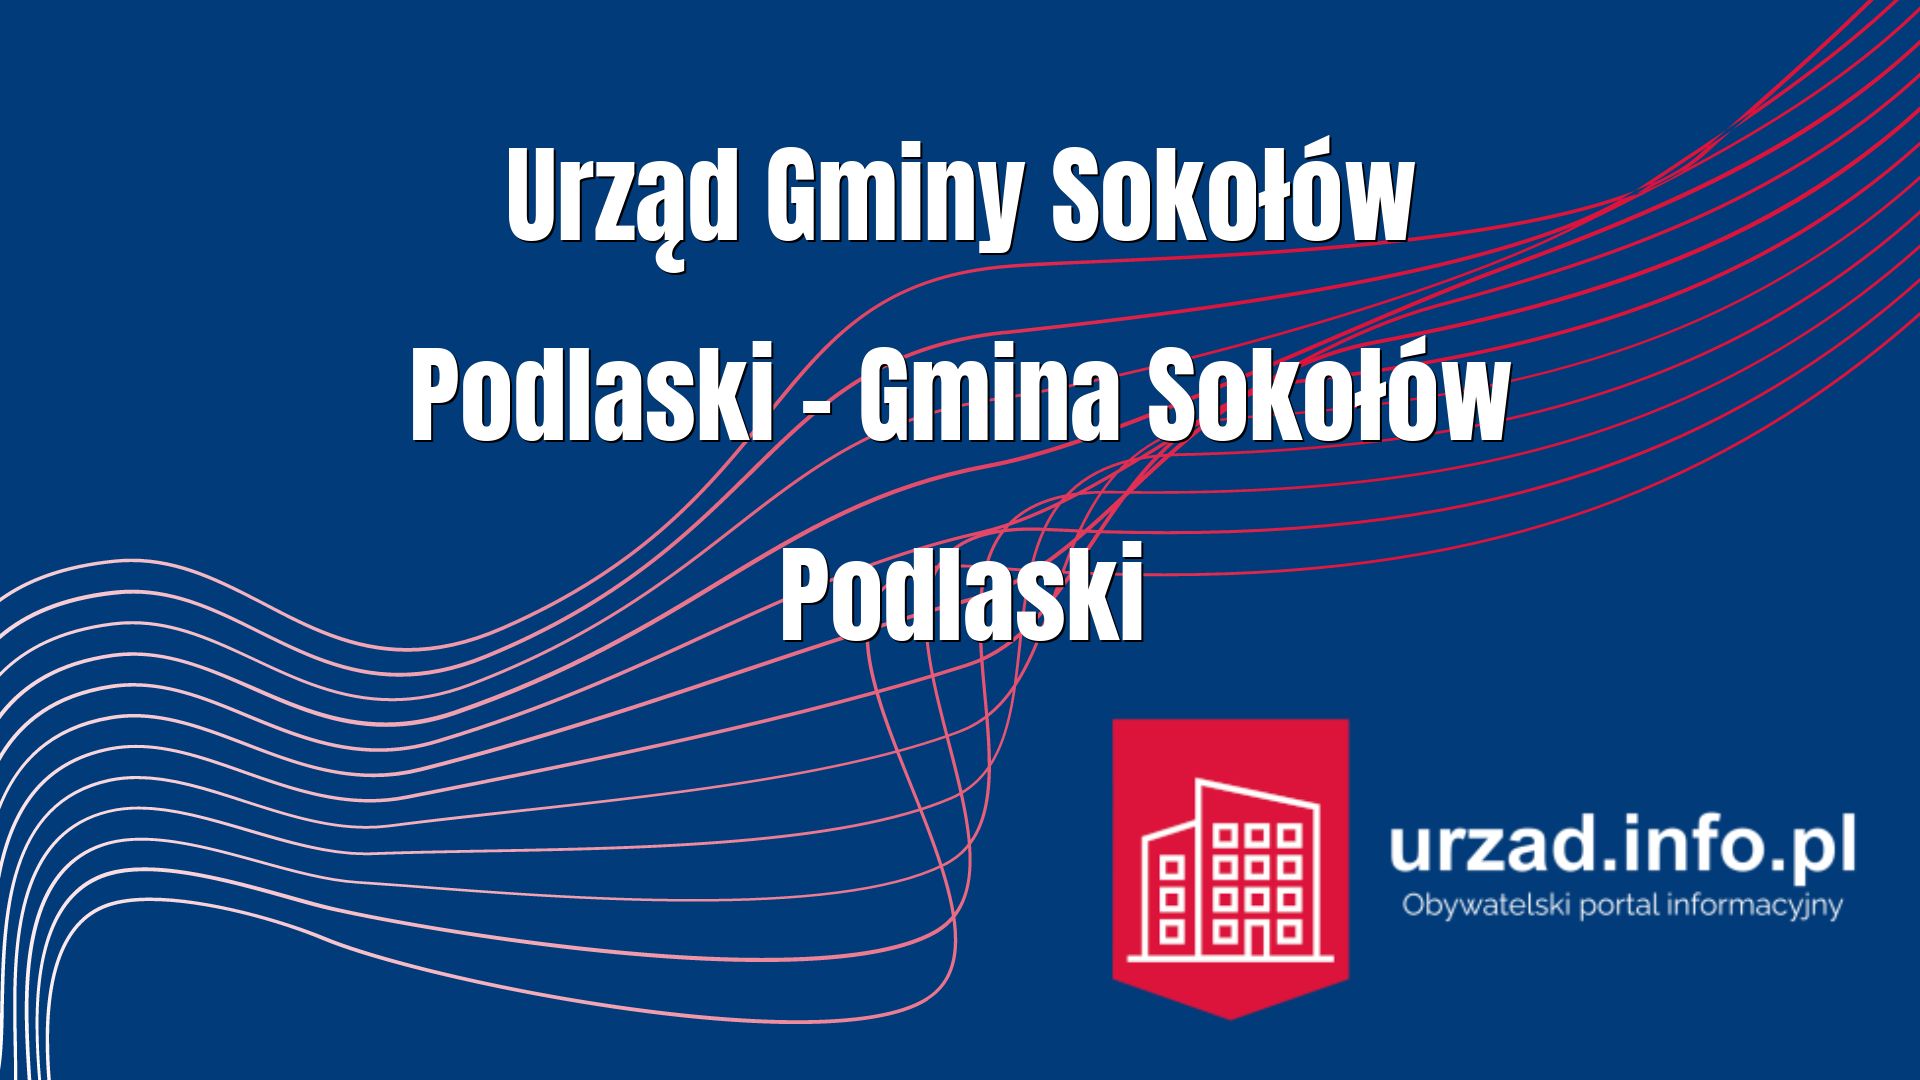 Urząd Gminy Sokołów Podlaski – Gmina Sokołów Podlaski